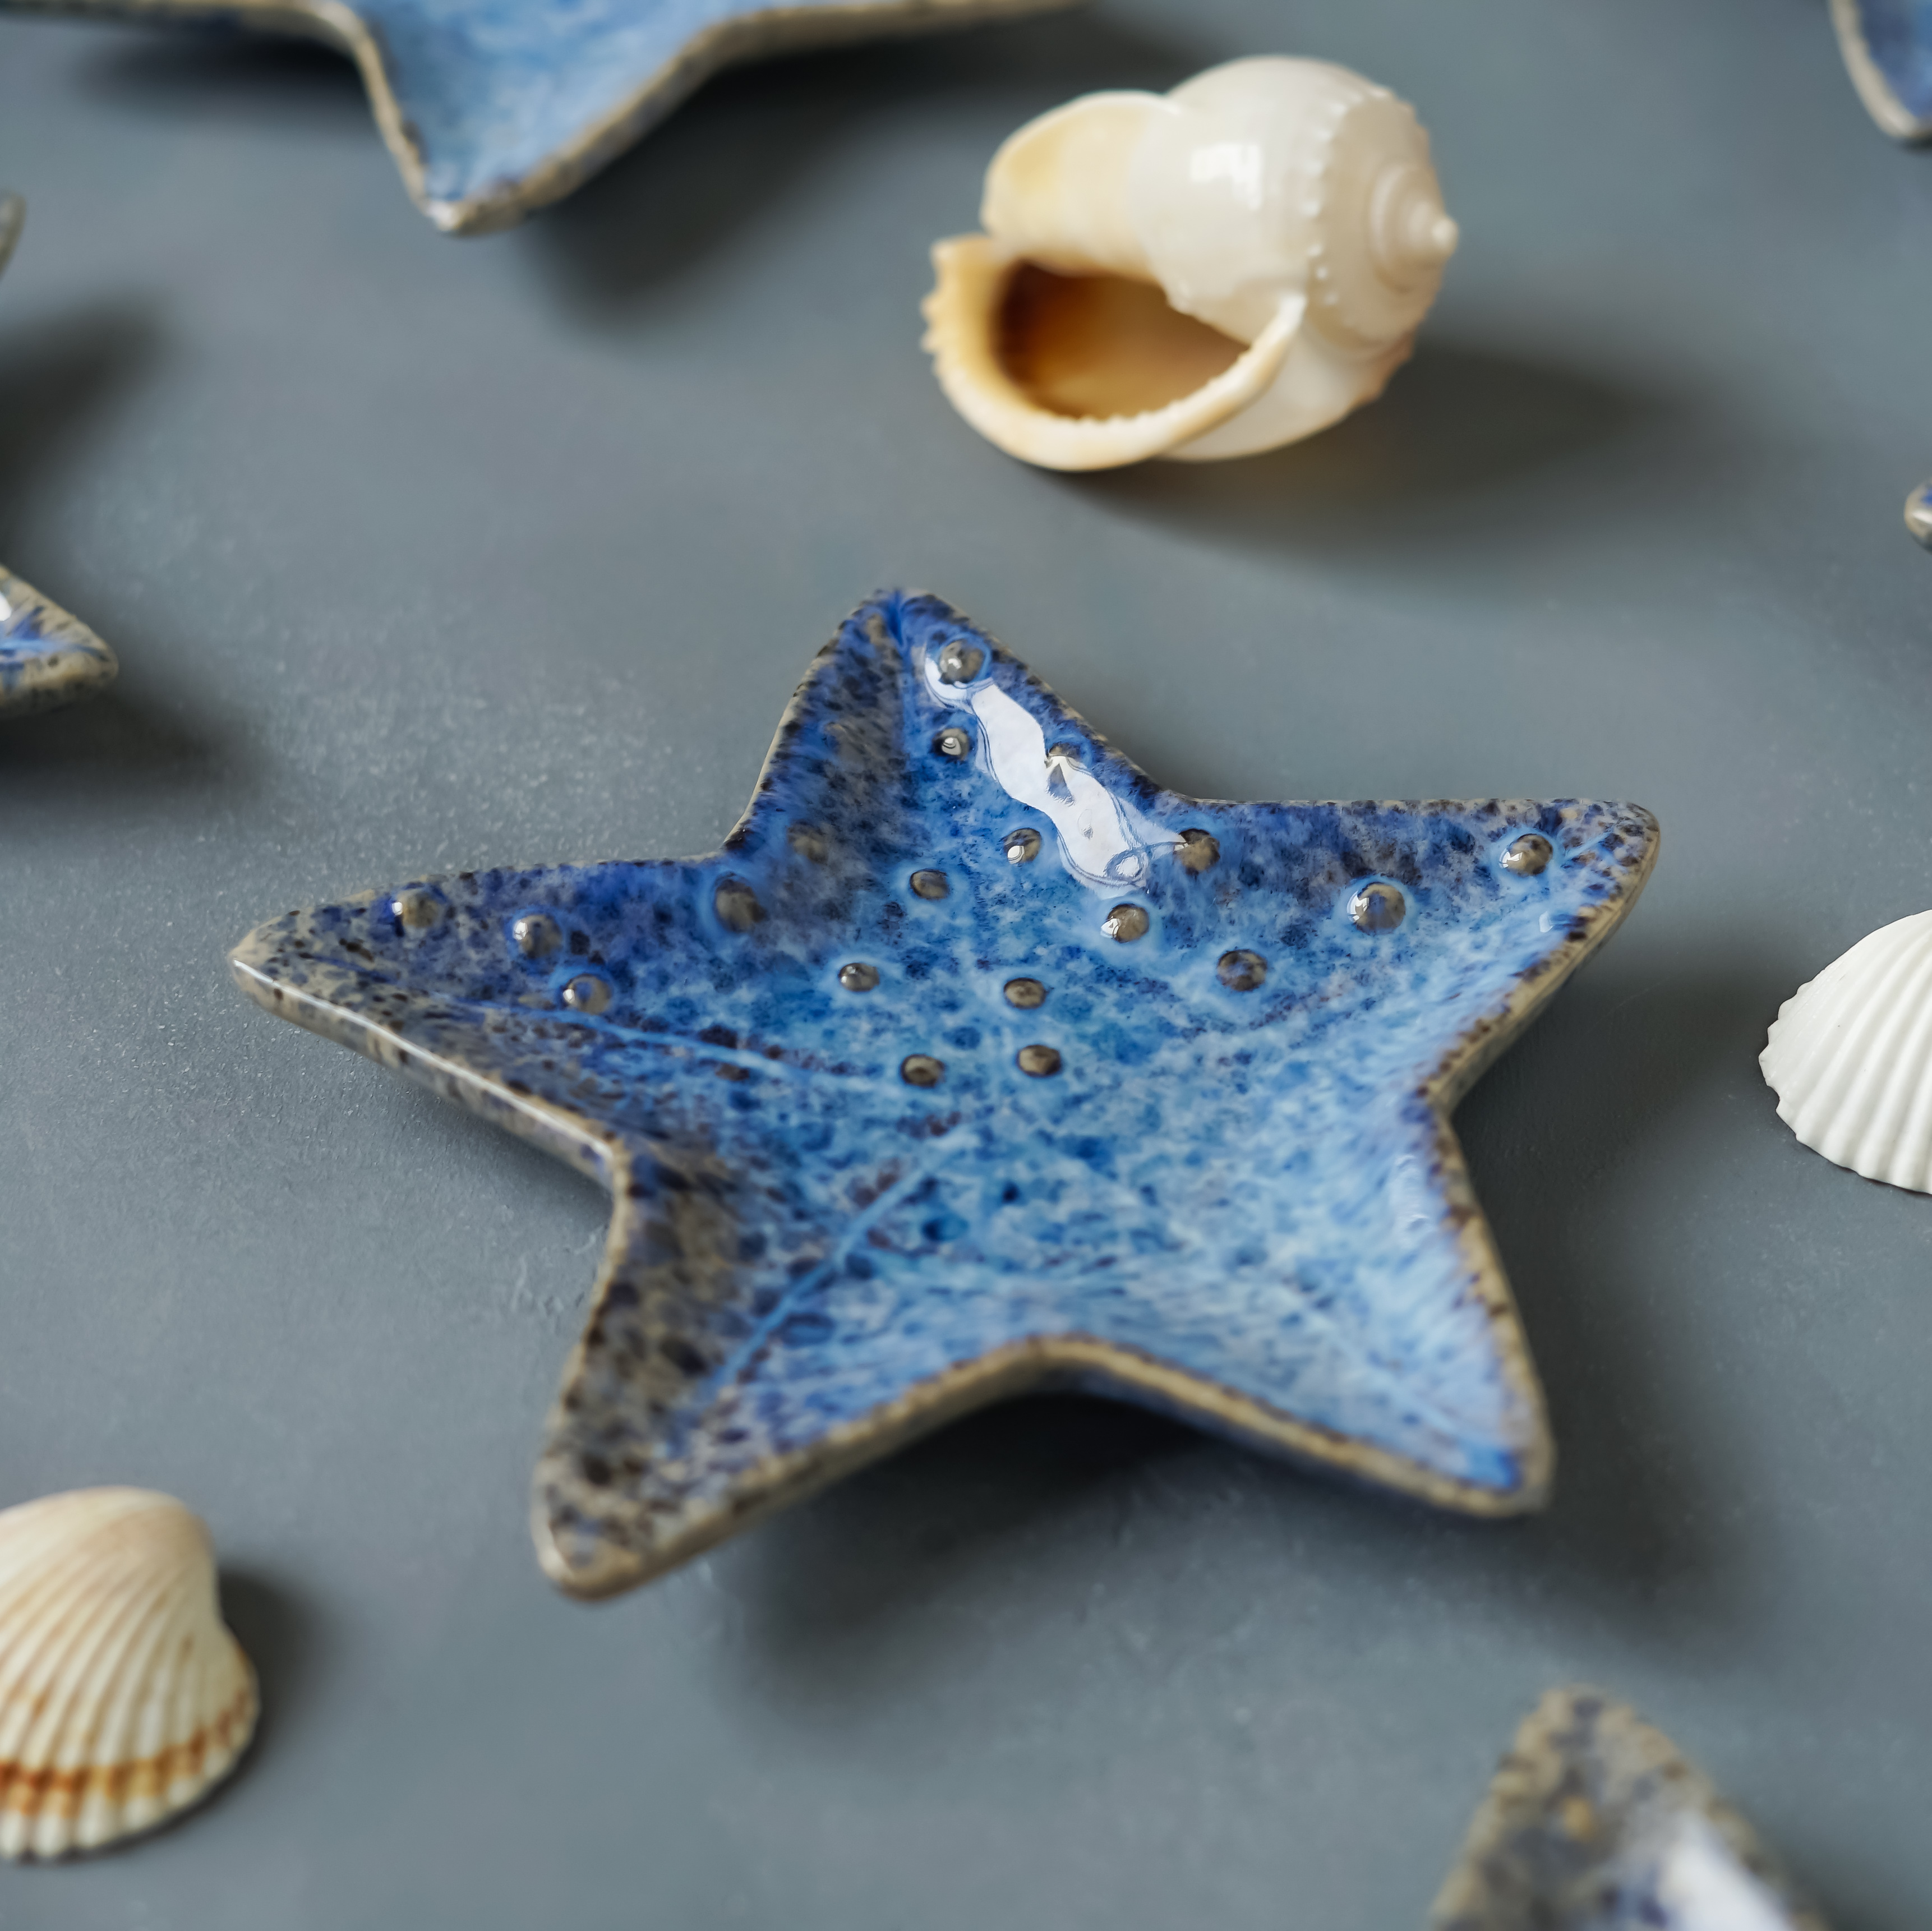 Sea collection. Синяя морская звезда. Коллекция морских звезд. Морские формы в керамике. Форма морской звезды.